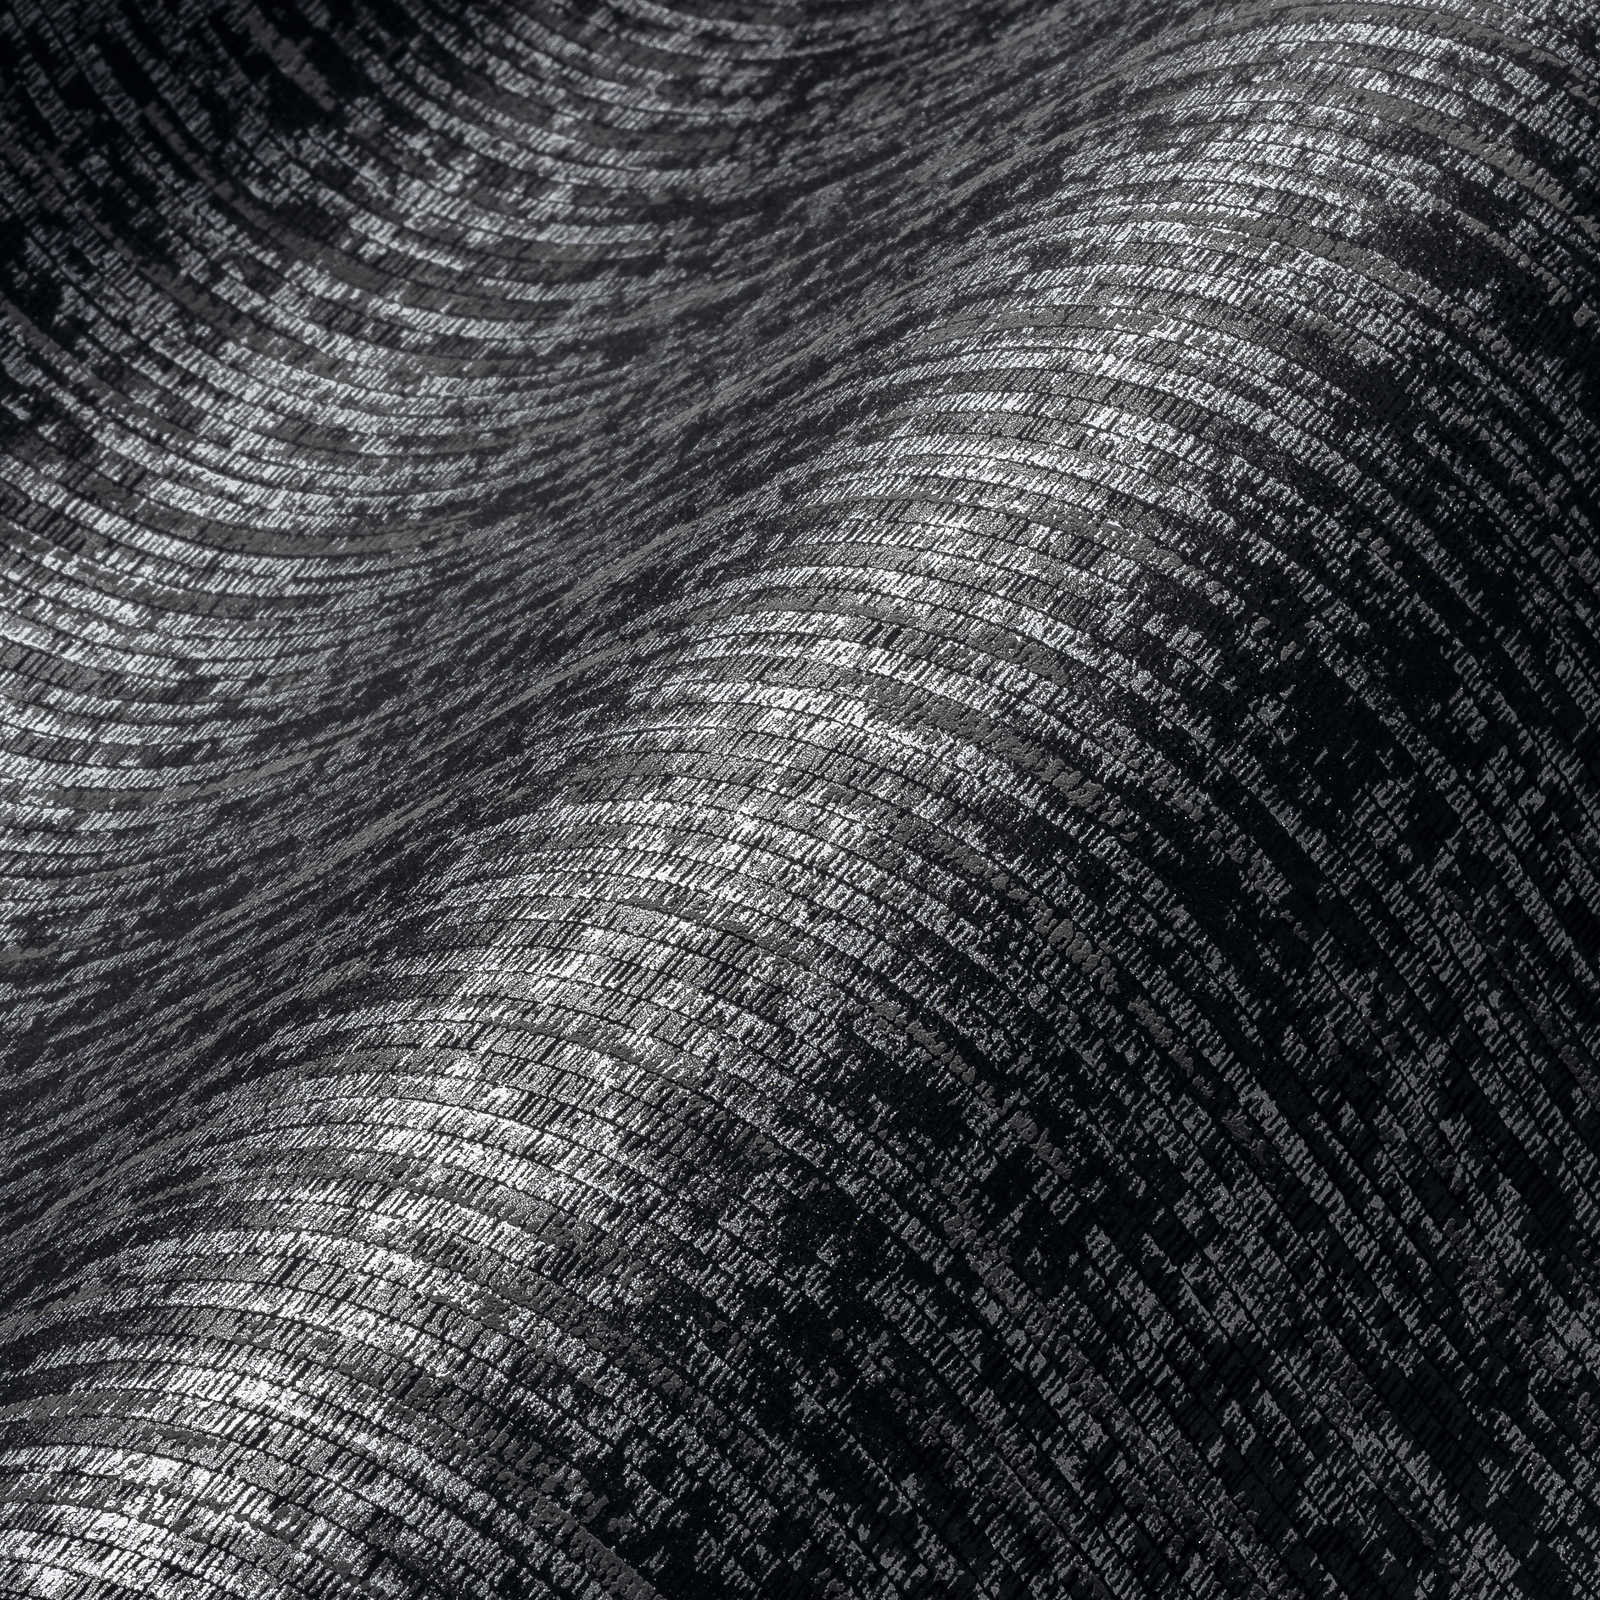             Zwart behang met stoffen look & metallic kleur - Zwart, Metallic
        